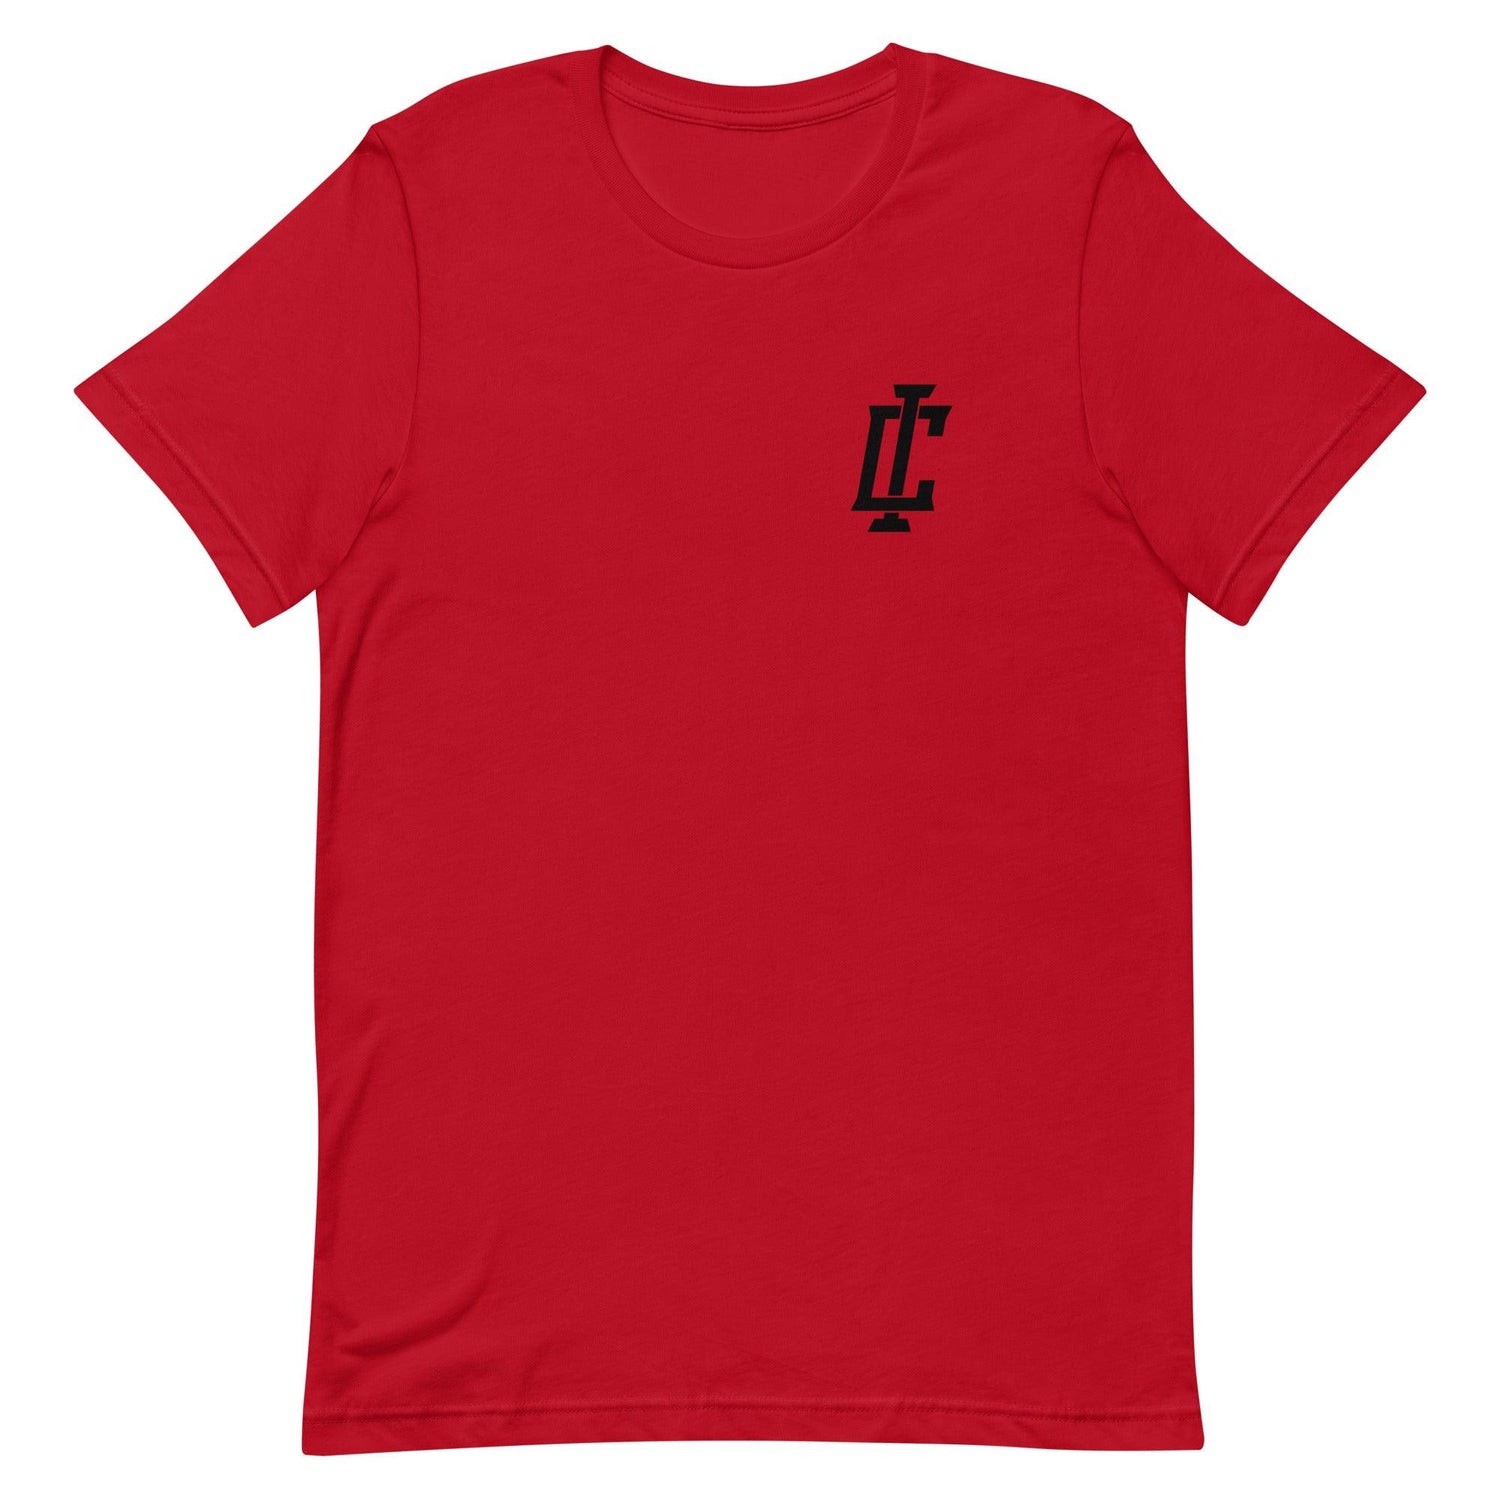 Isaiah Crawford "Essential" t-shirt - Fan Arch